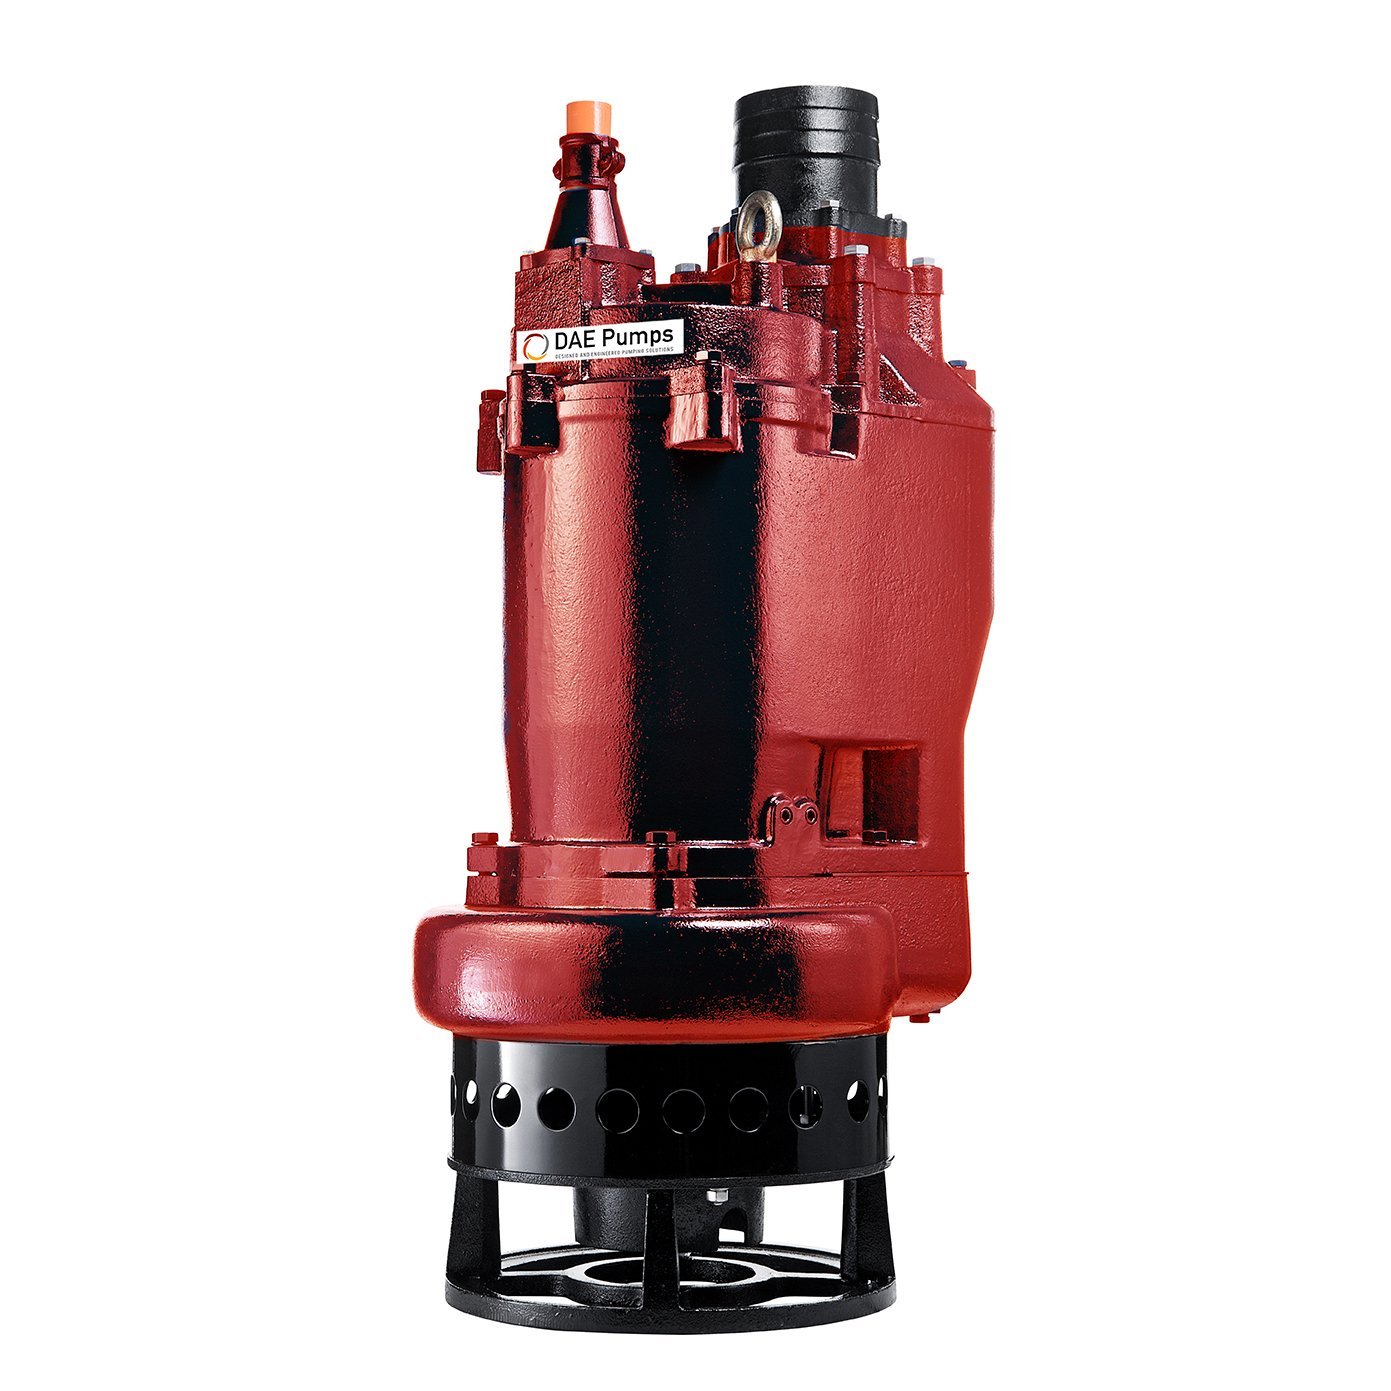 DAE Pumps 6220-P Submersible Slurry Pump